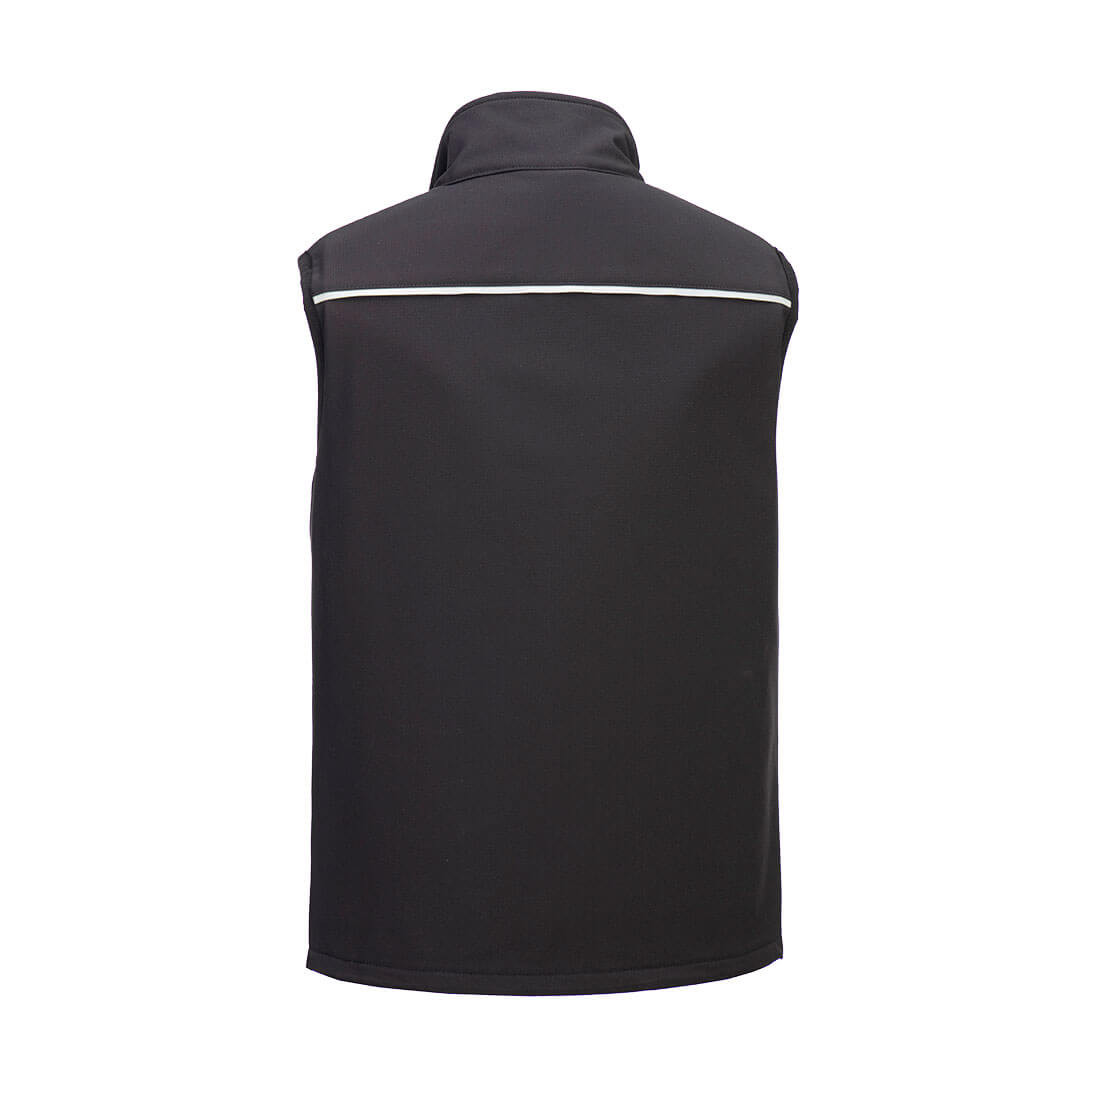 DX4 Softshell Gilet (3L) - Safetywear